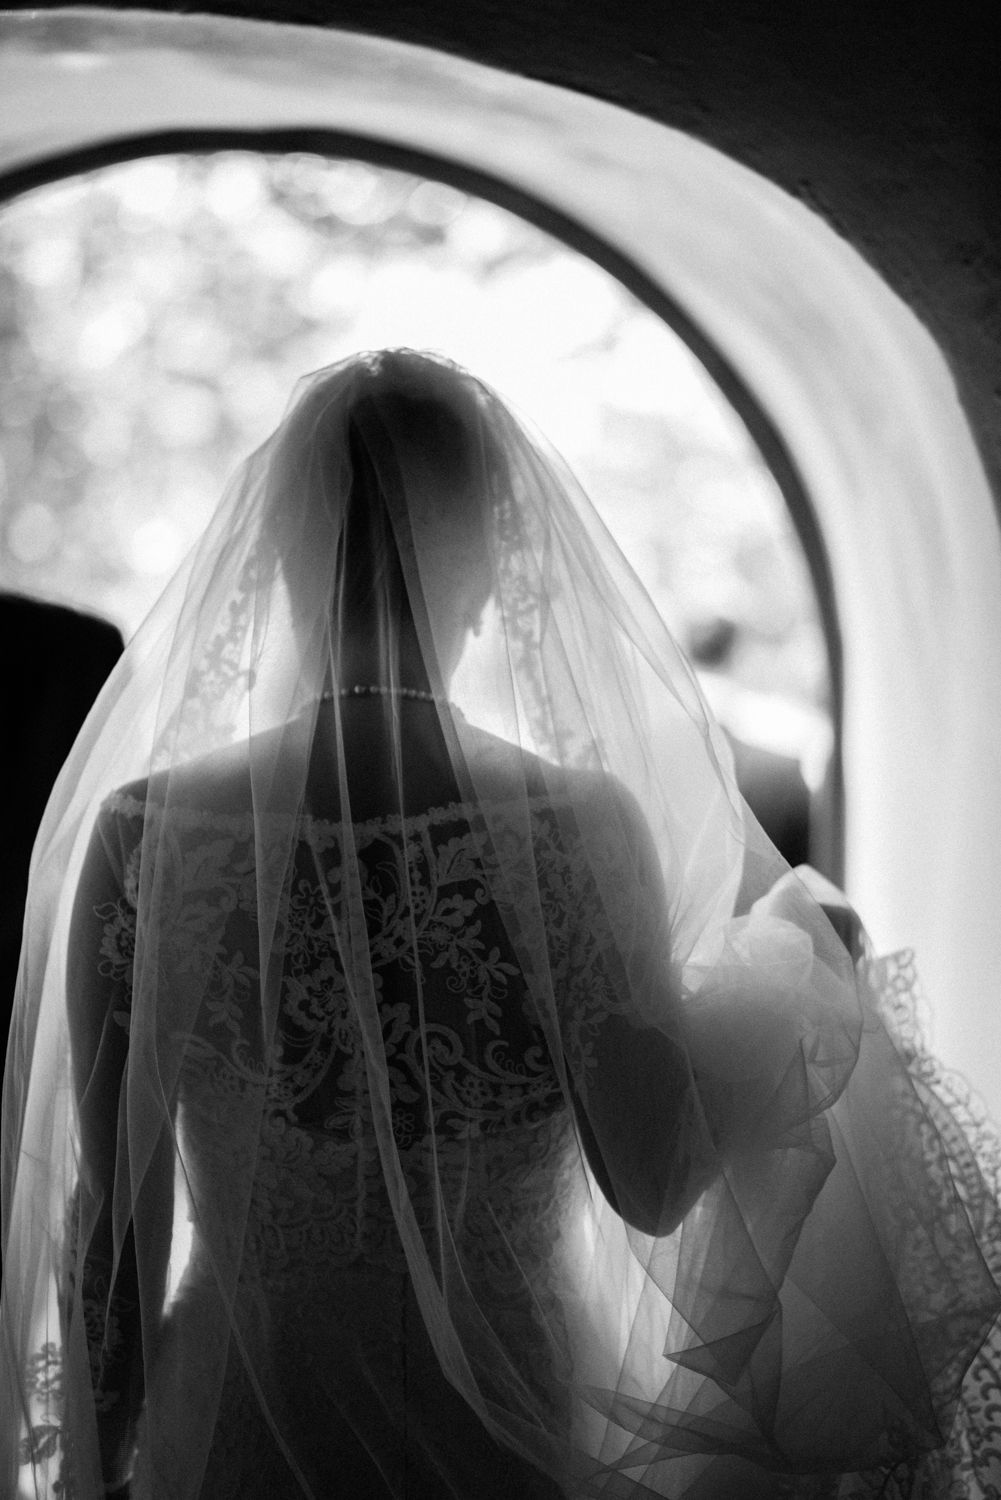  Braut mit Schleier in schwarz weiß